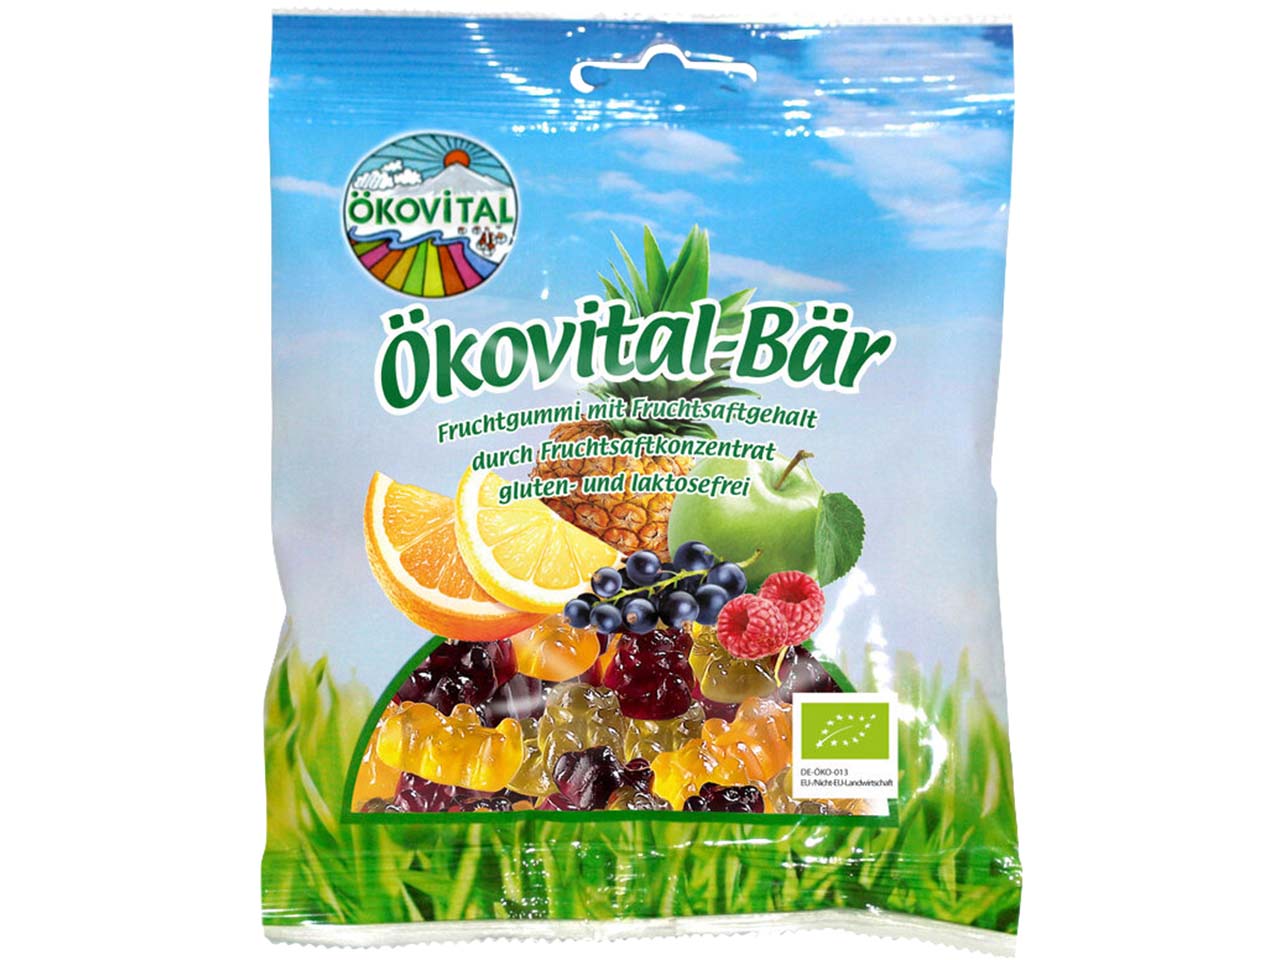 ÖKOVITAL Bio-Gummibärchen "Ökovital-Bär" 80 g